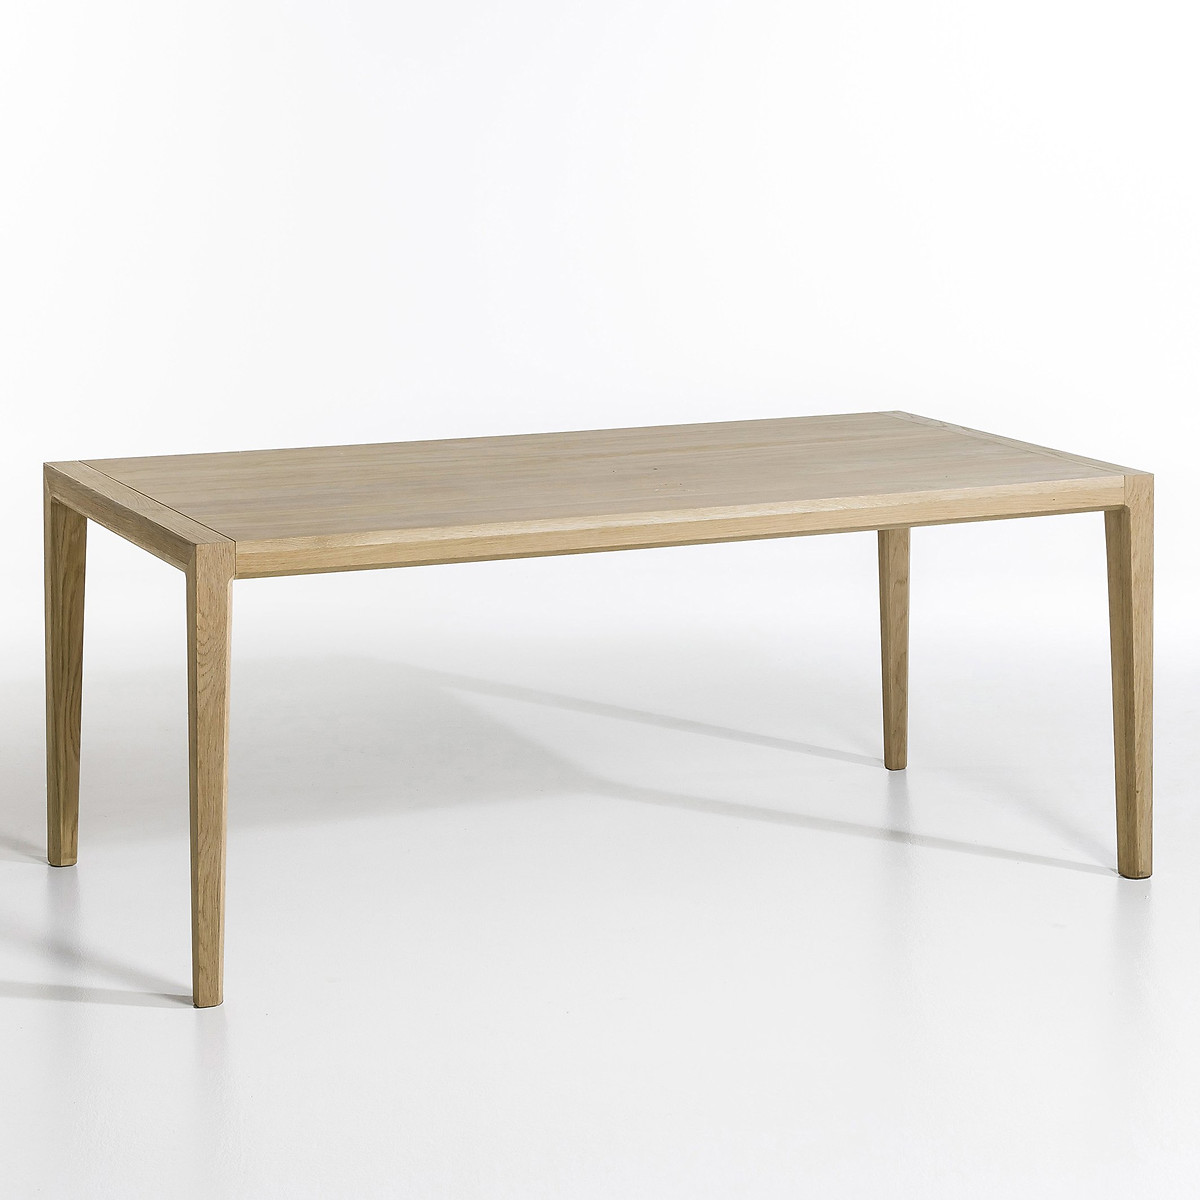 Стол прямоугольный Nizou дизайн Э Галлины на 8 персон каштановый стол складной diletta д 140 дизайнер э галлины единый размер каштановый